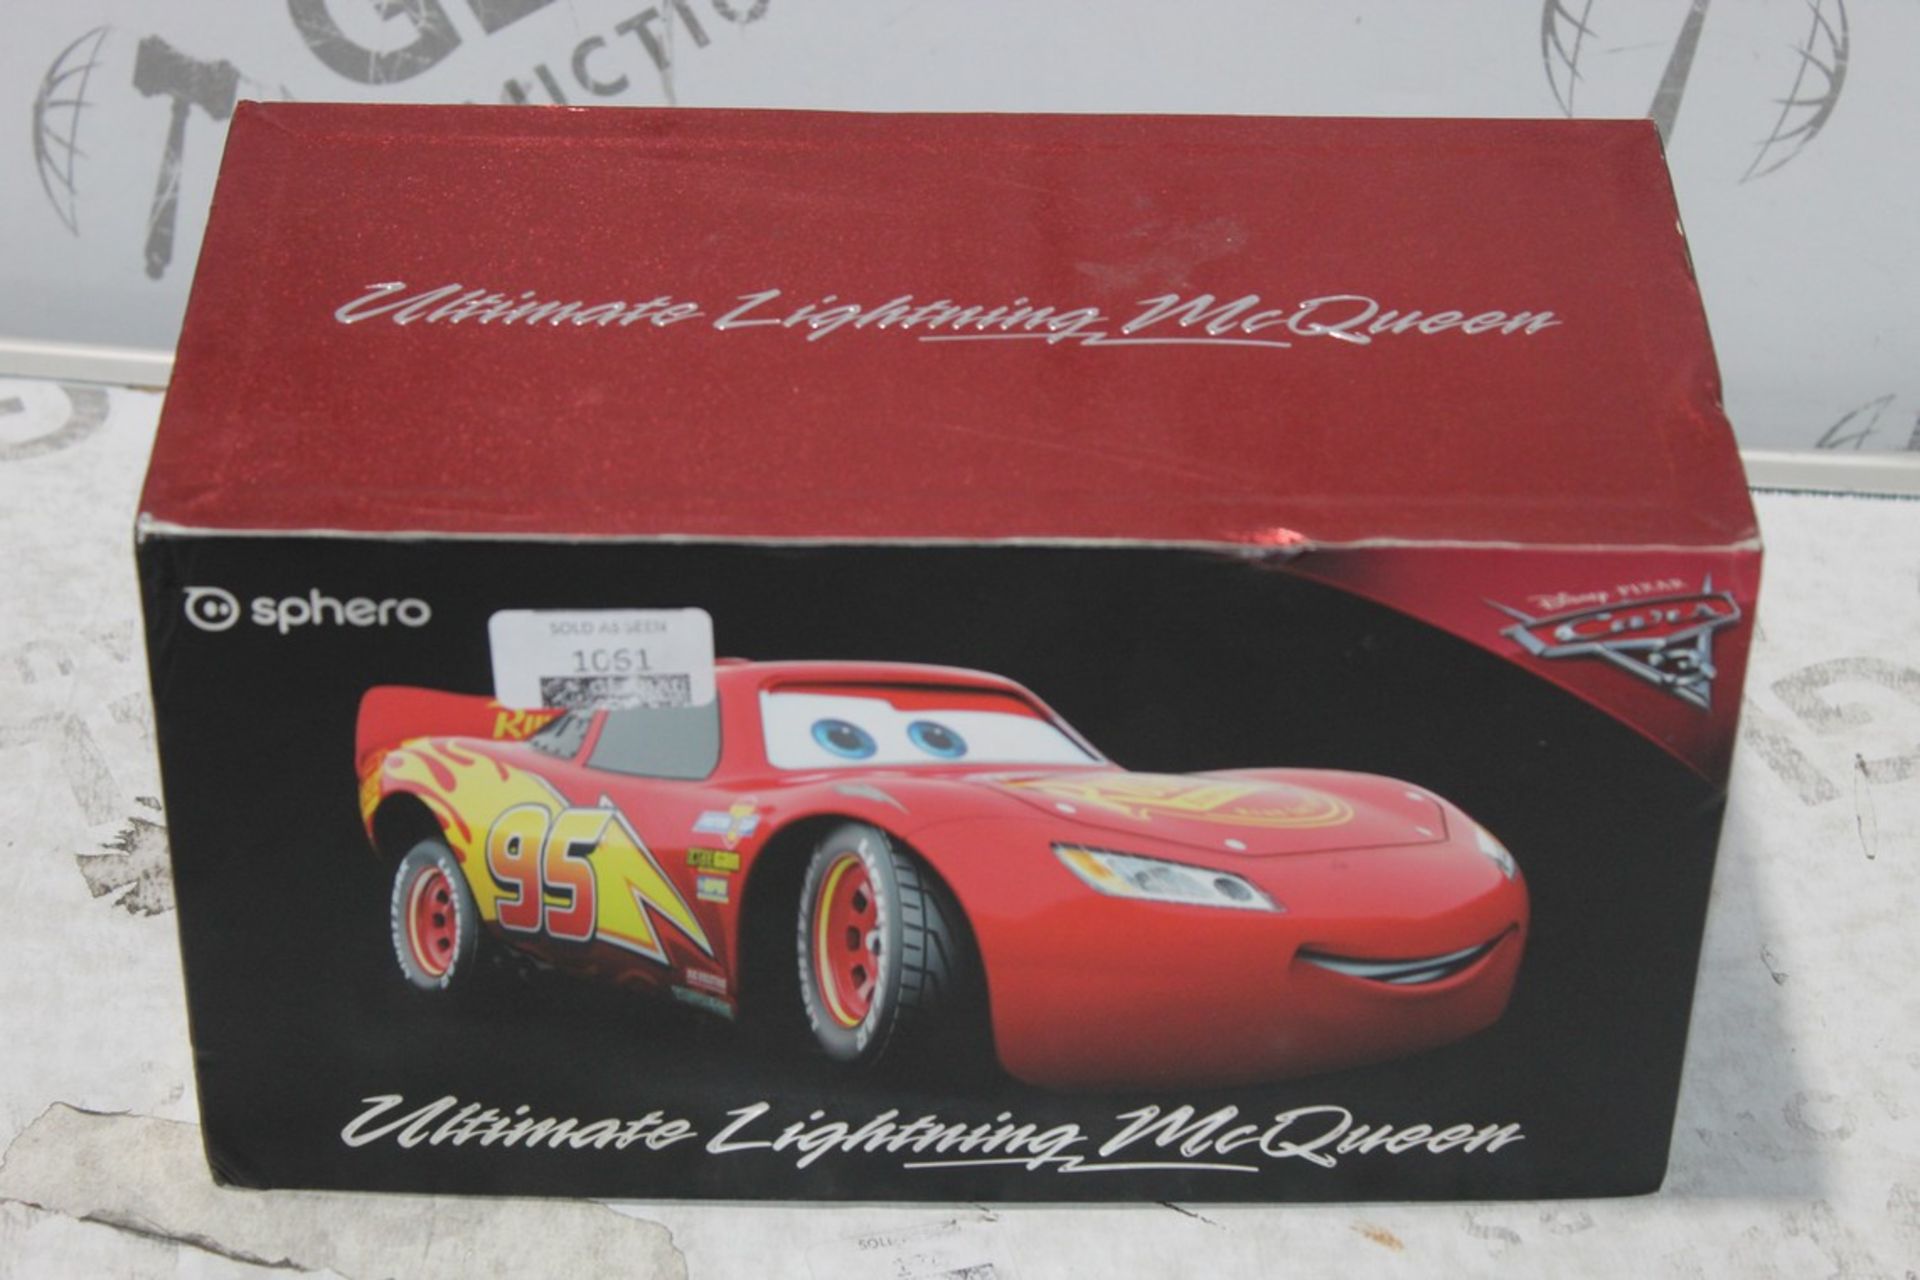 Boxed Sphero Disney Lightening McQueen Pixar Cars Interactive Toy Car RRP £250